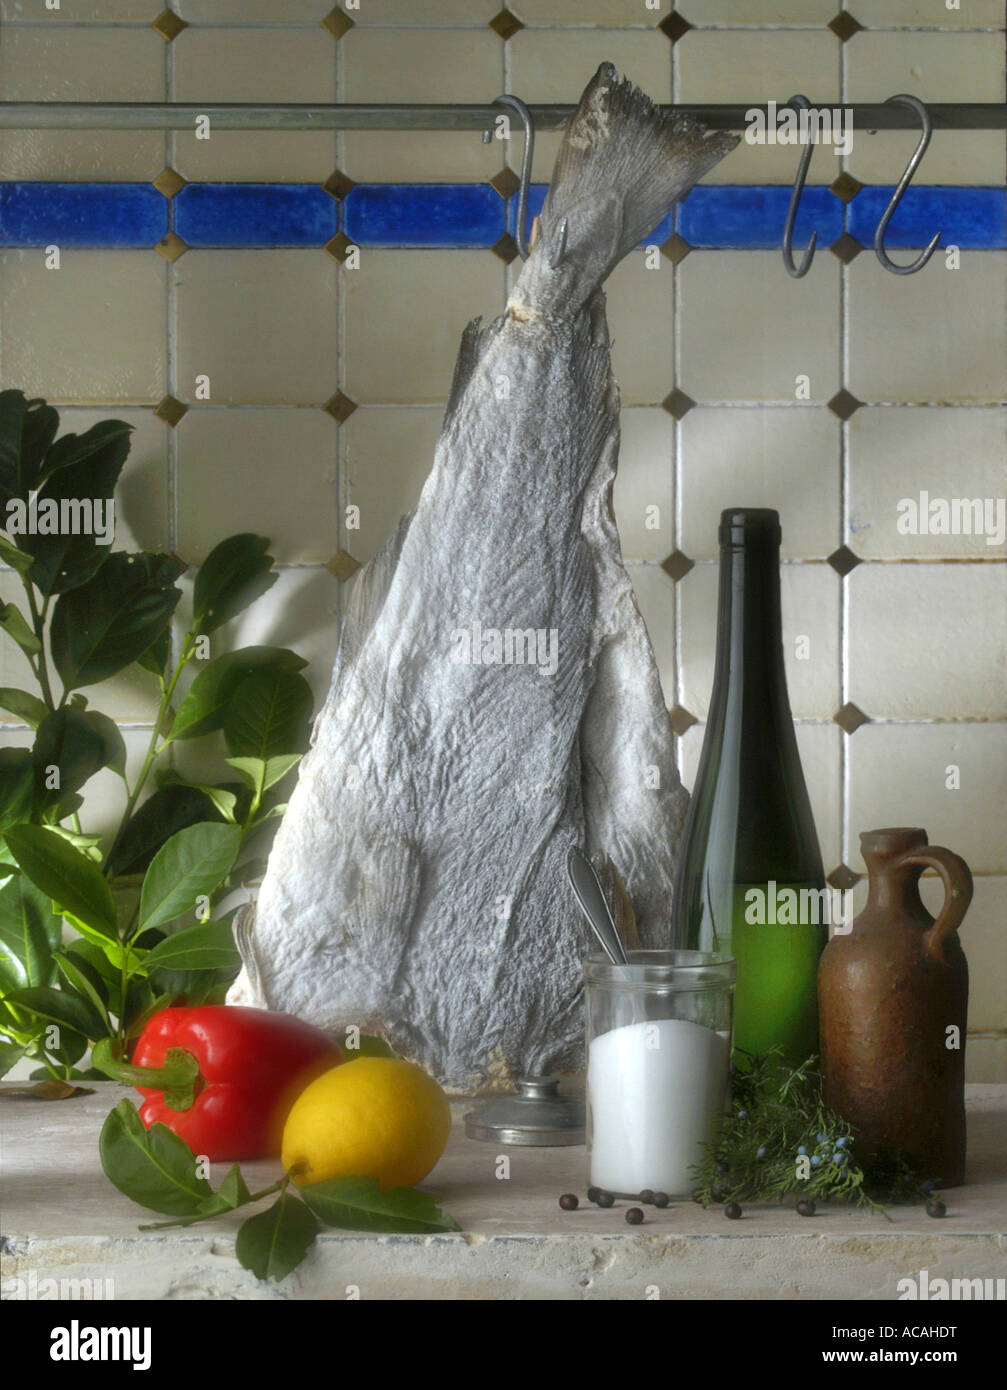 Ingrédients pour stockfish : huile, vin, sel, laurier, citron, paprika, poivre Banque D'Images